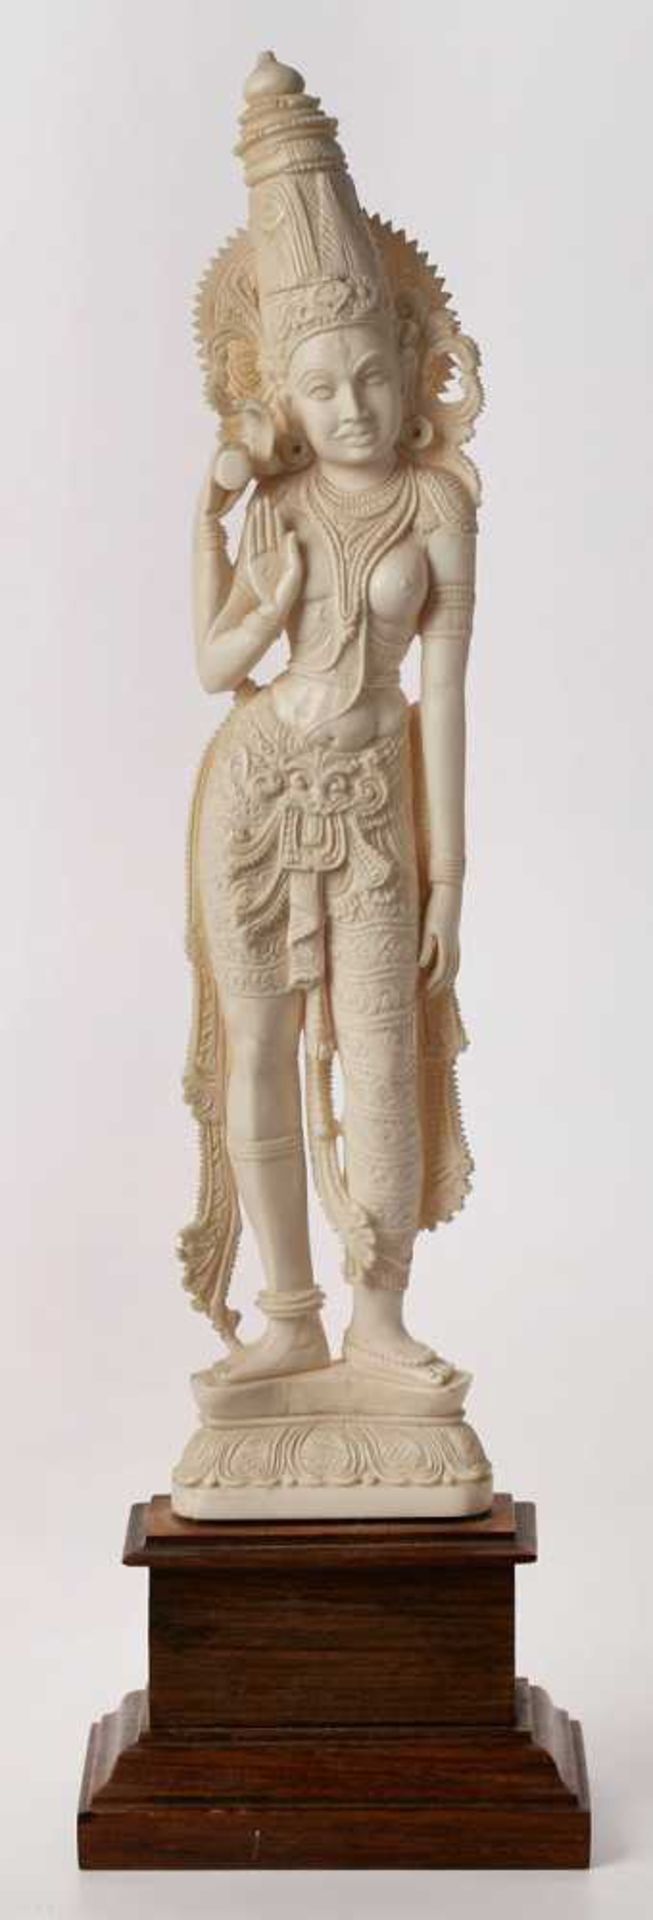 Indische Göttin, wohl Anf. 20. Jh.